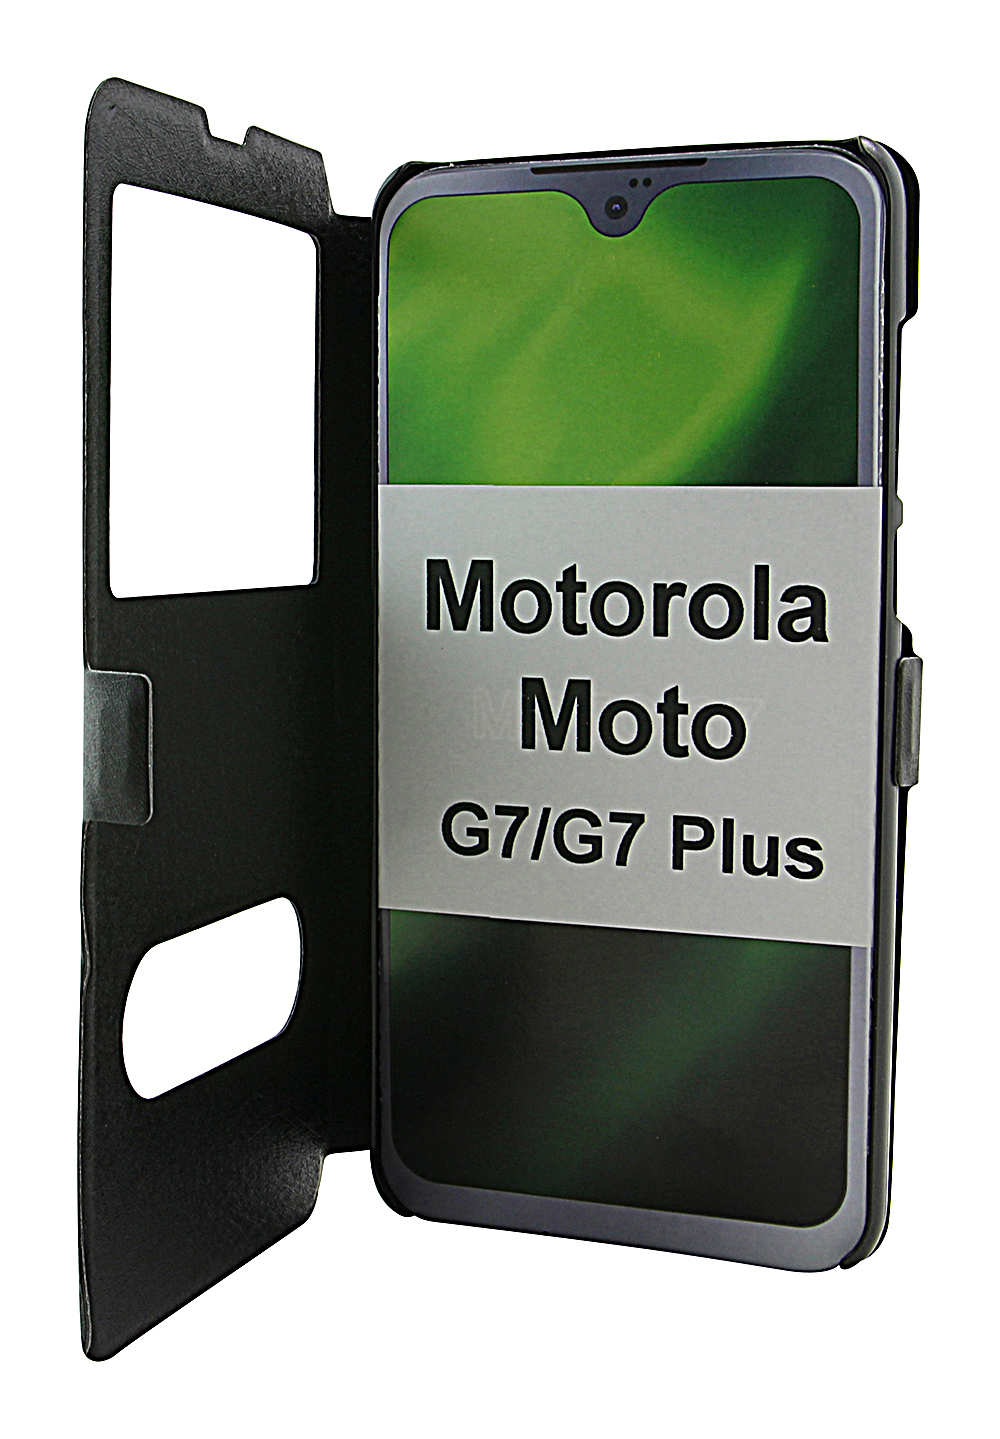 billigamobilskydd.seFlipcase Motorola Moto G7 / Moto G7 Plus